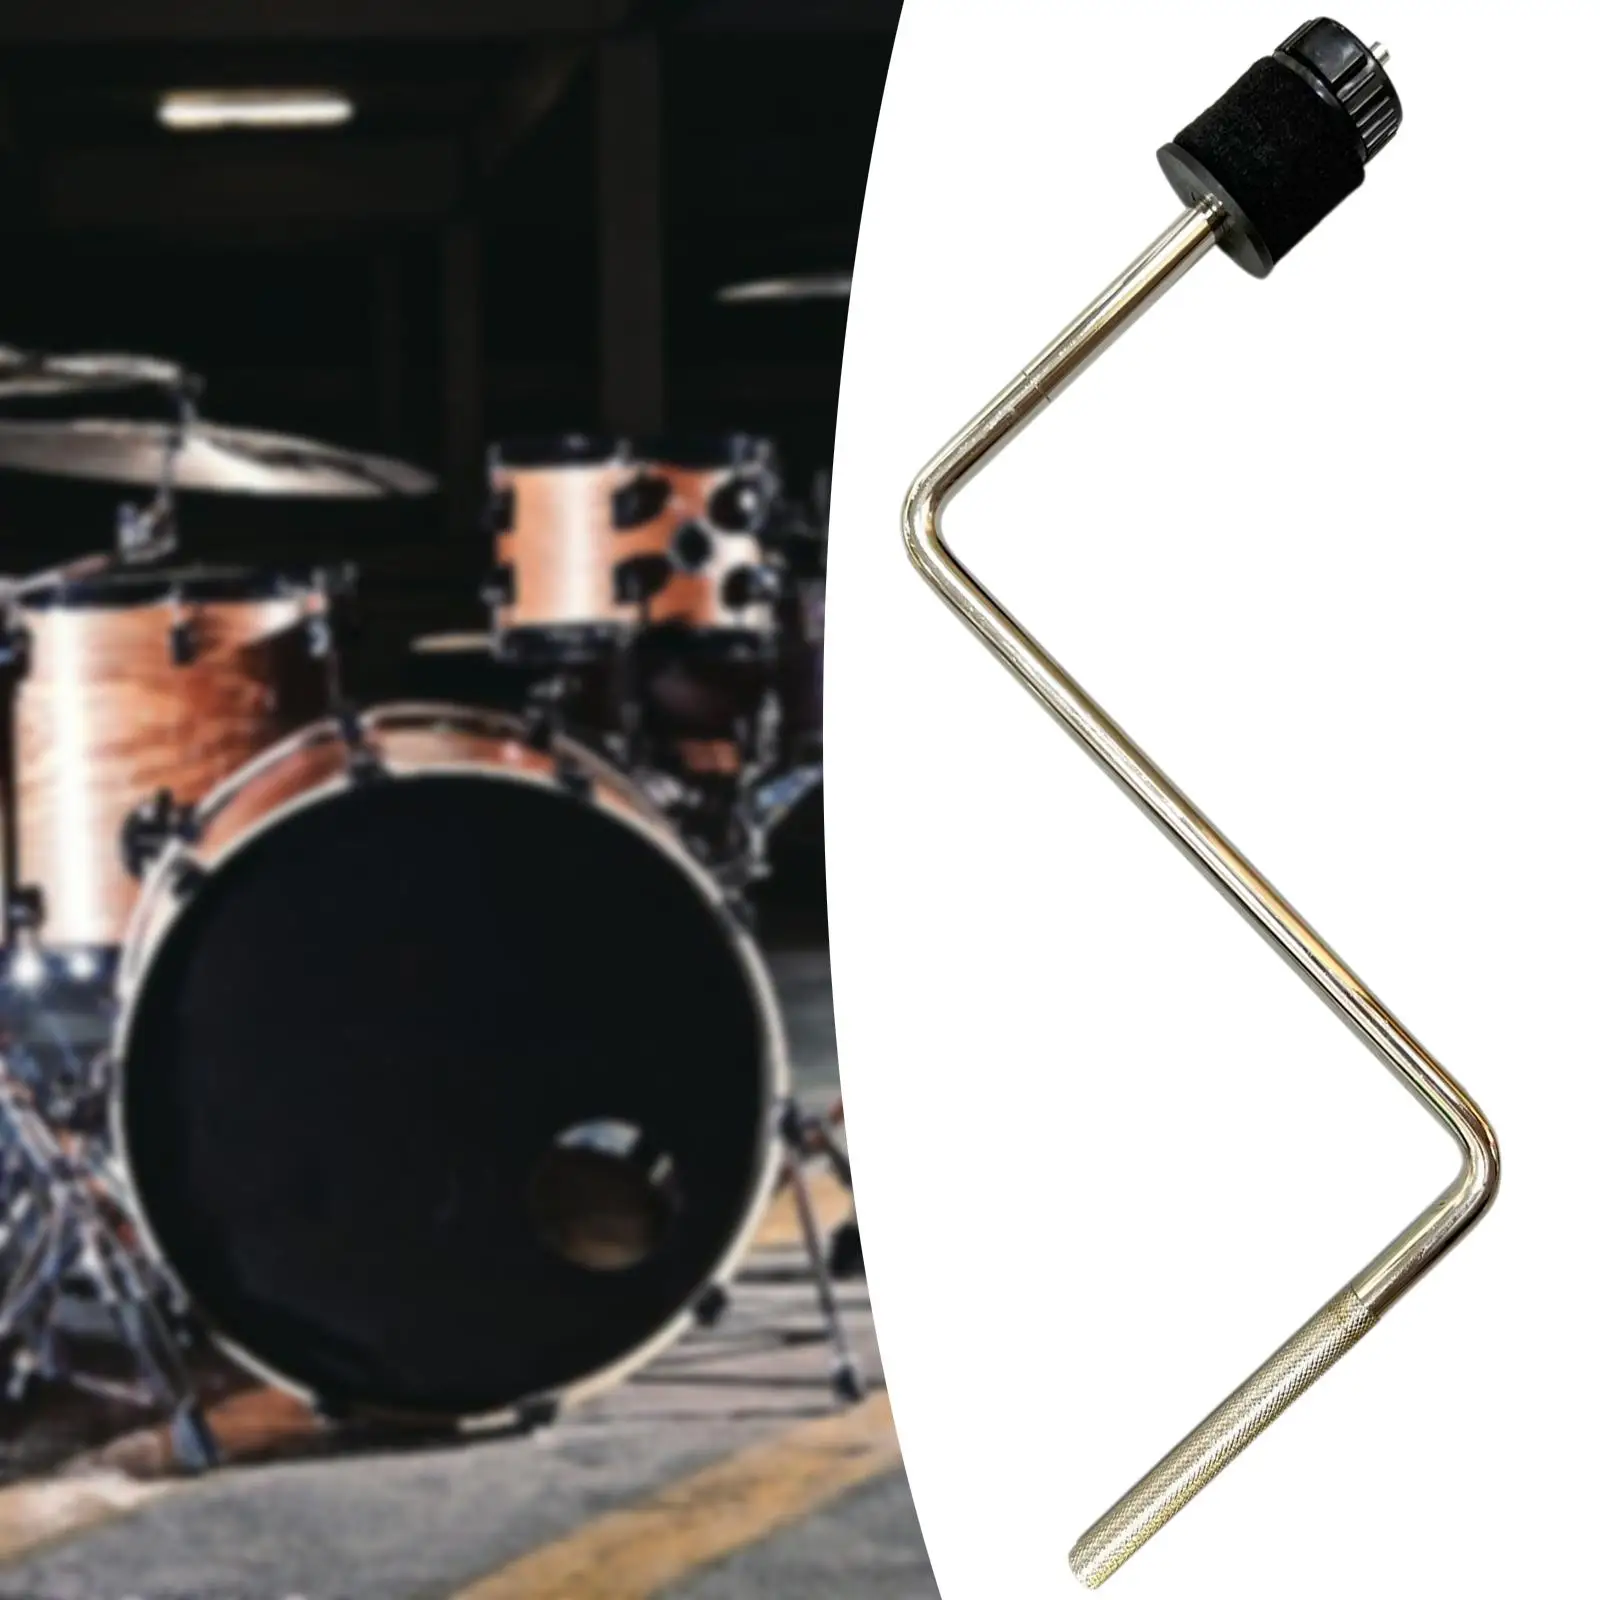 Drum Rod Cymbal Arm Percussion Instrument Accessories Cymbal Holder Cymbal Arm for Percussion Assembly Parts Drum Set Parts